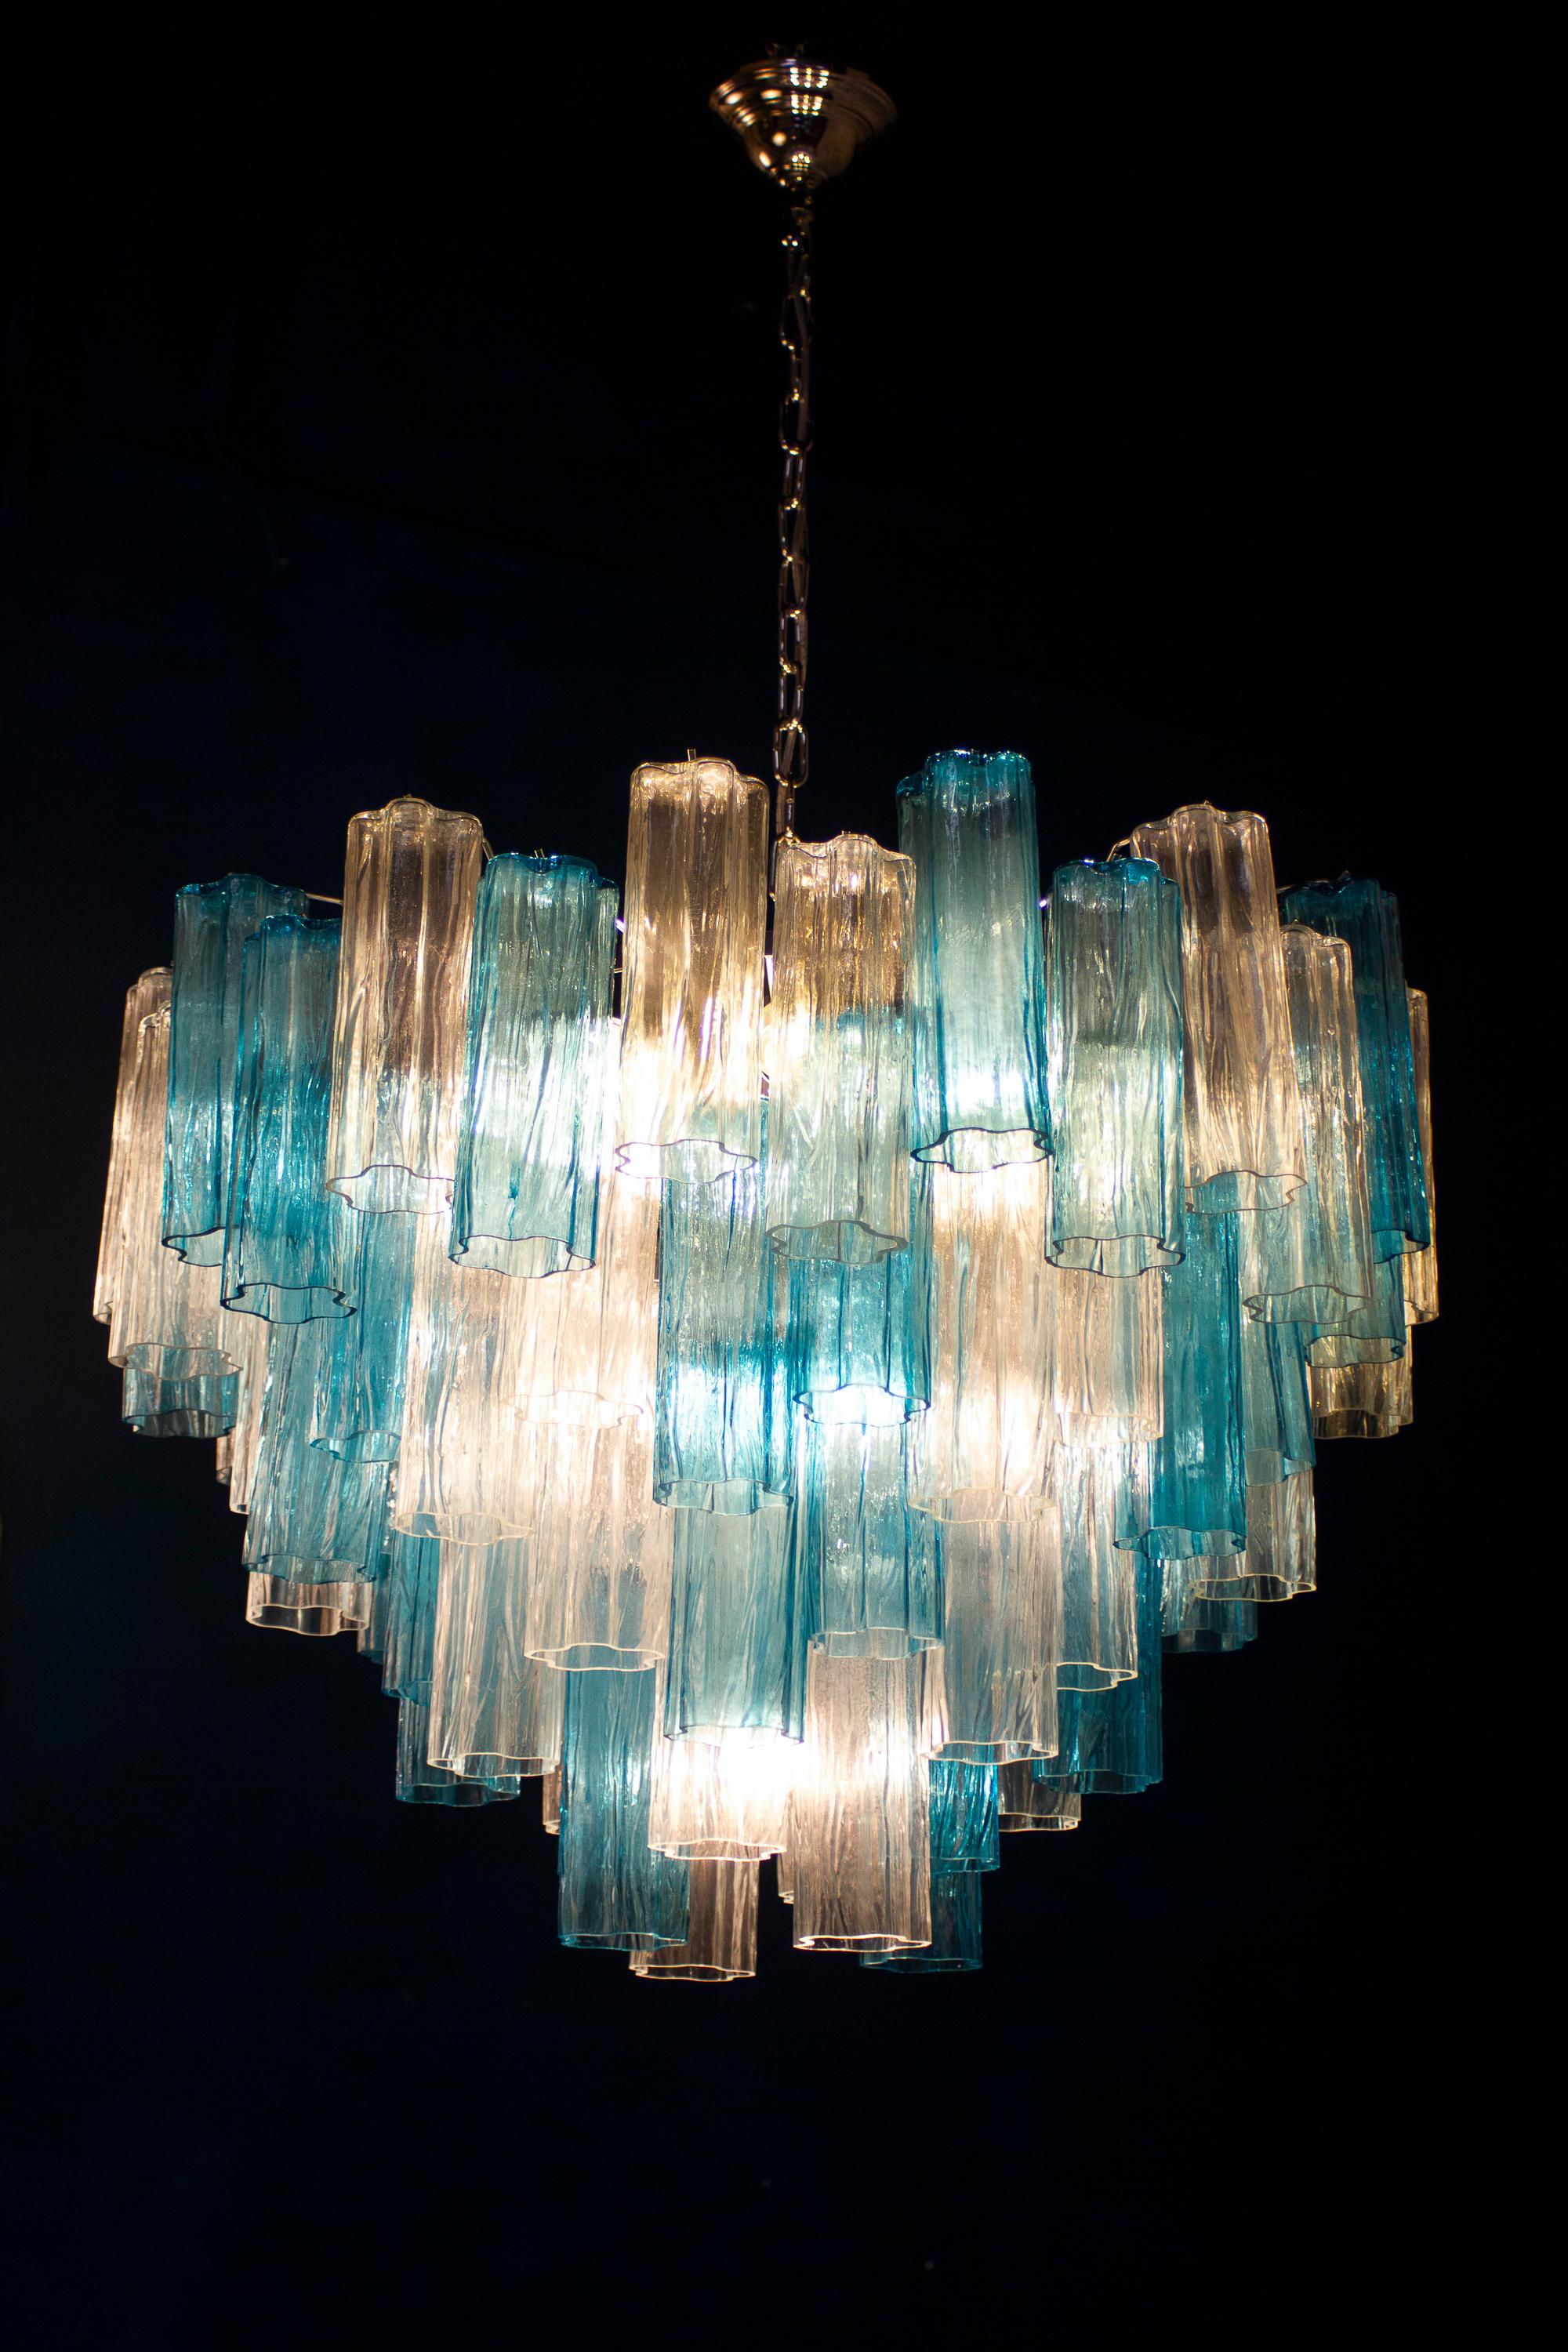 Ce lustre étonnant présente une rare combinaison de couleurs en considérant les verres précieux de Murano de couleur bleu et glace. Chaque lustre est composé de 78 éléments en verre soufflé tronchi soutenus par un cadre chromé.
10 ampoules E